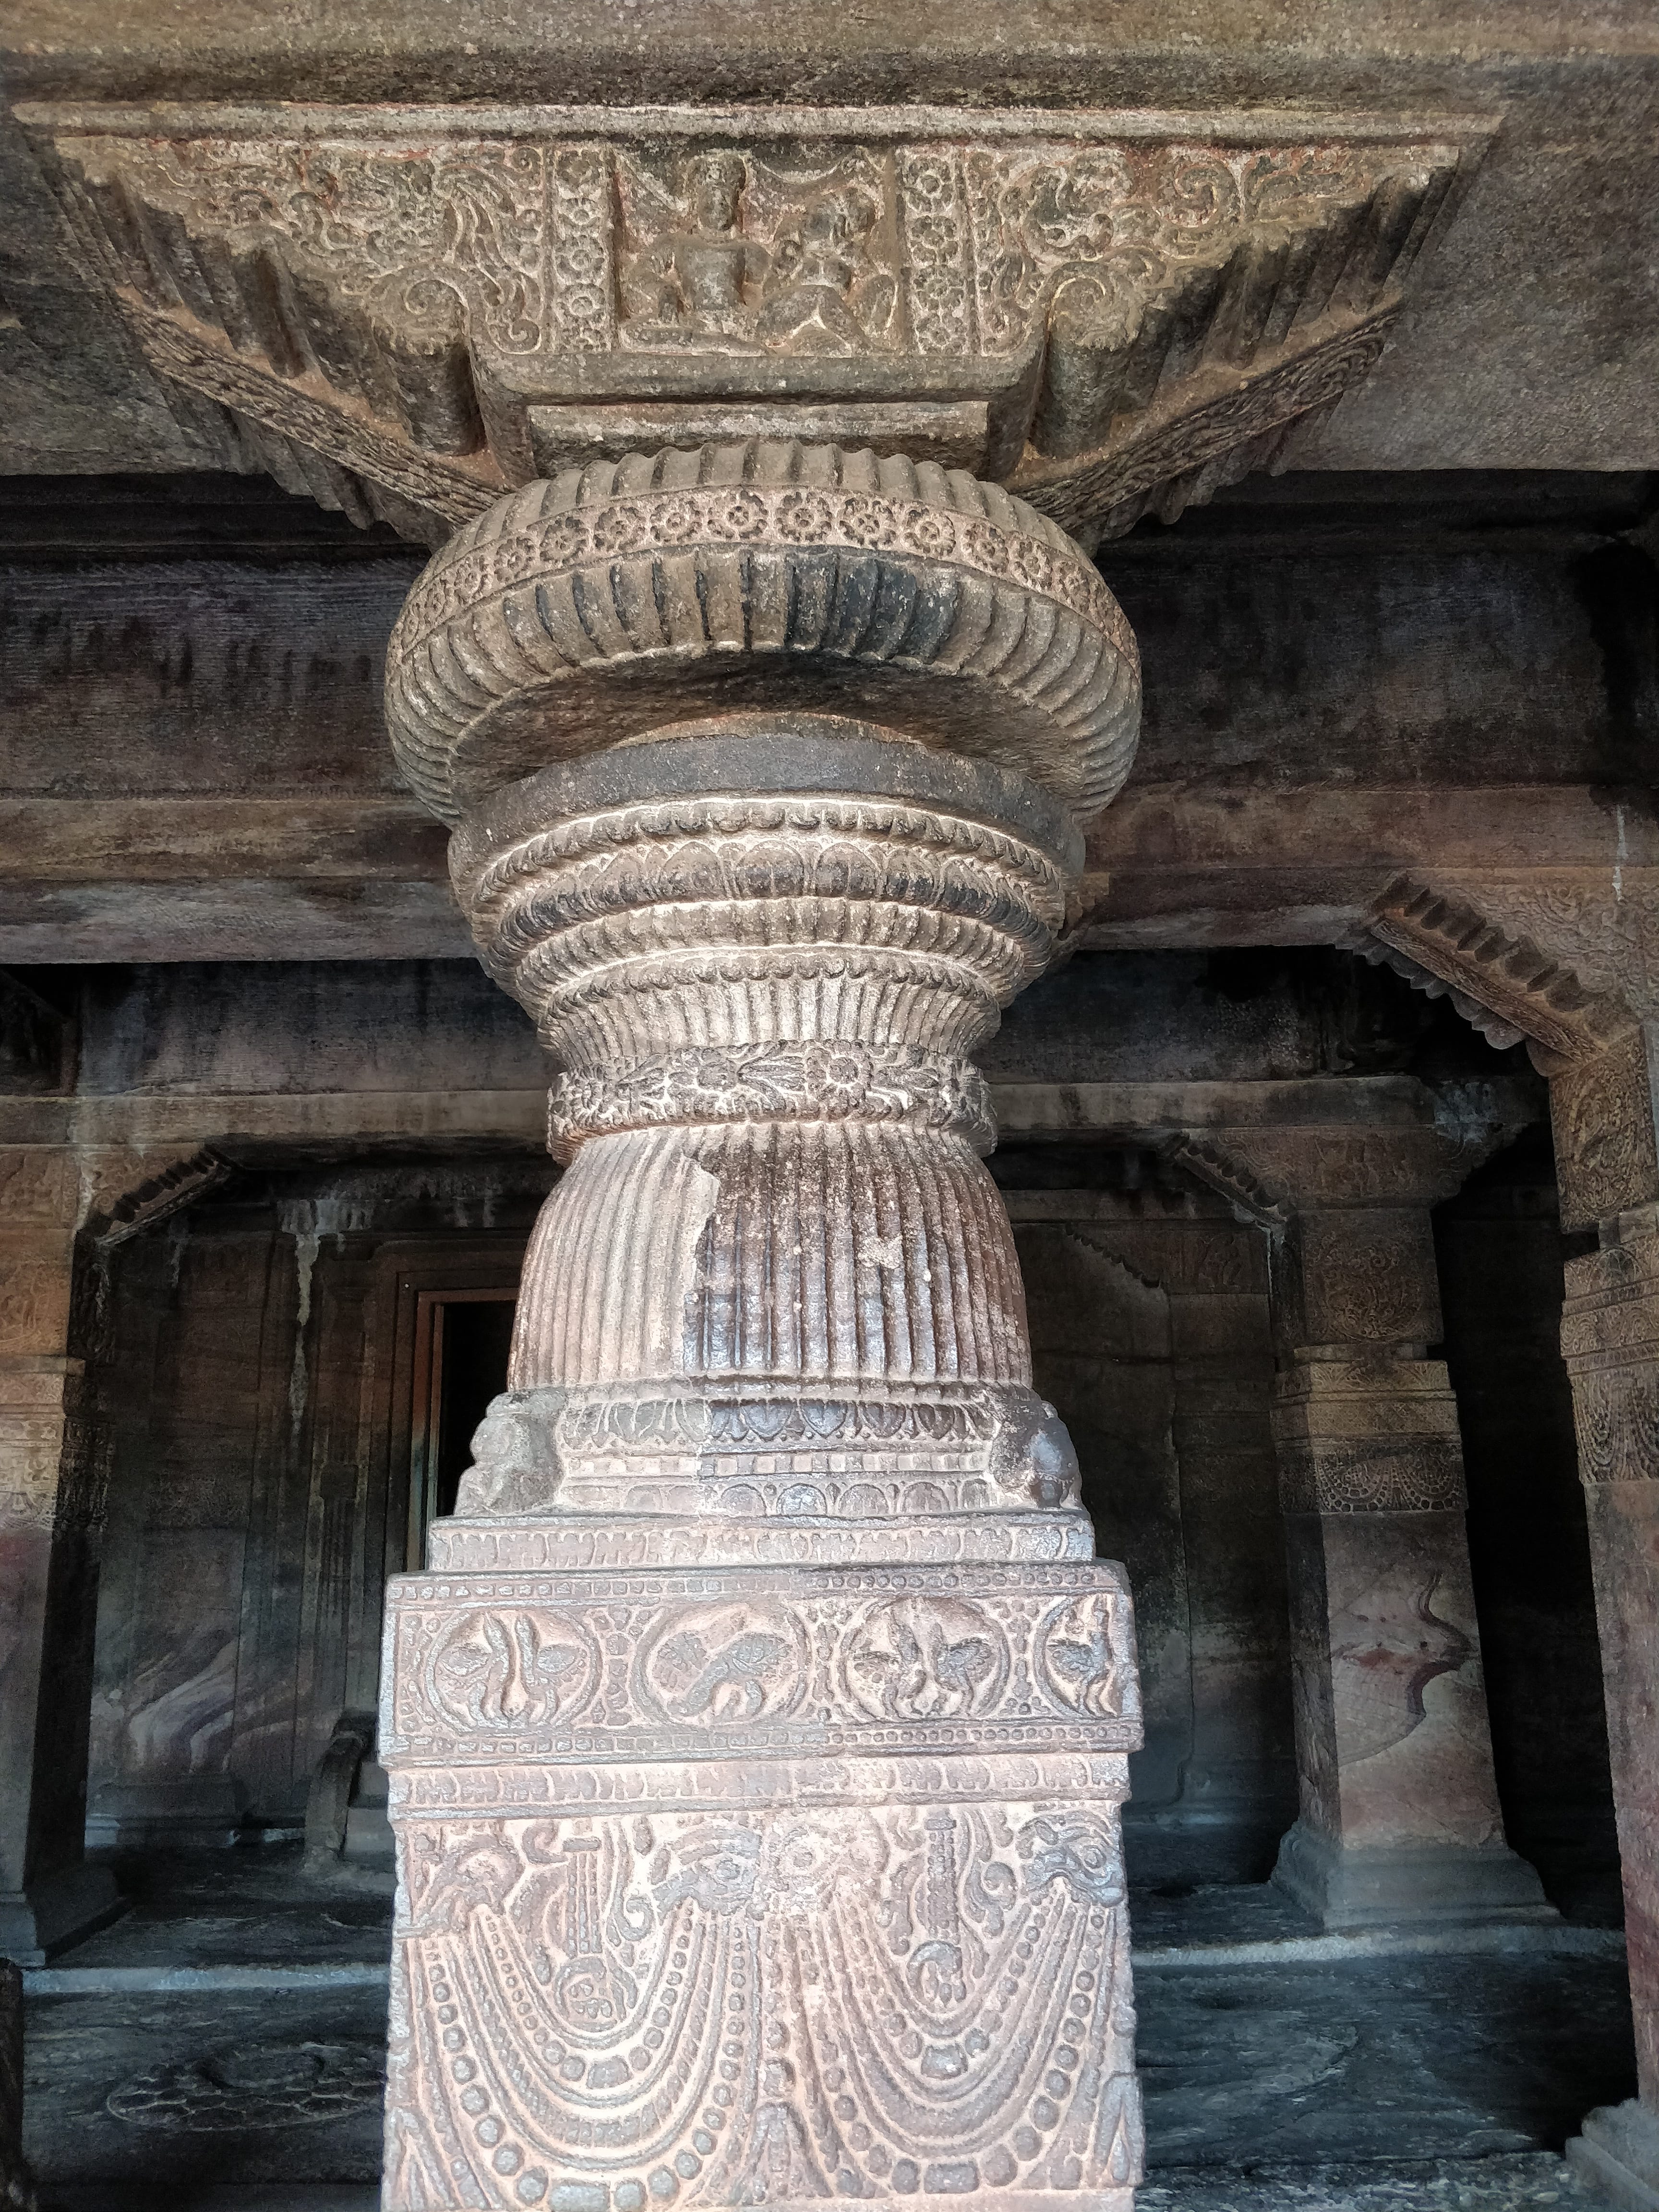 another pillar